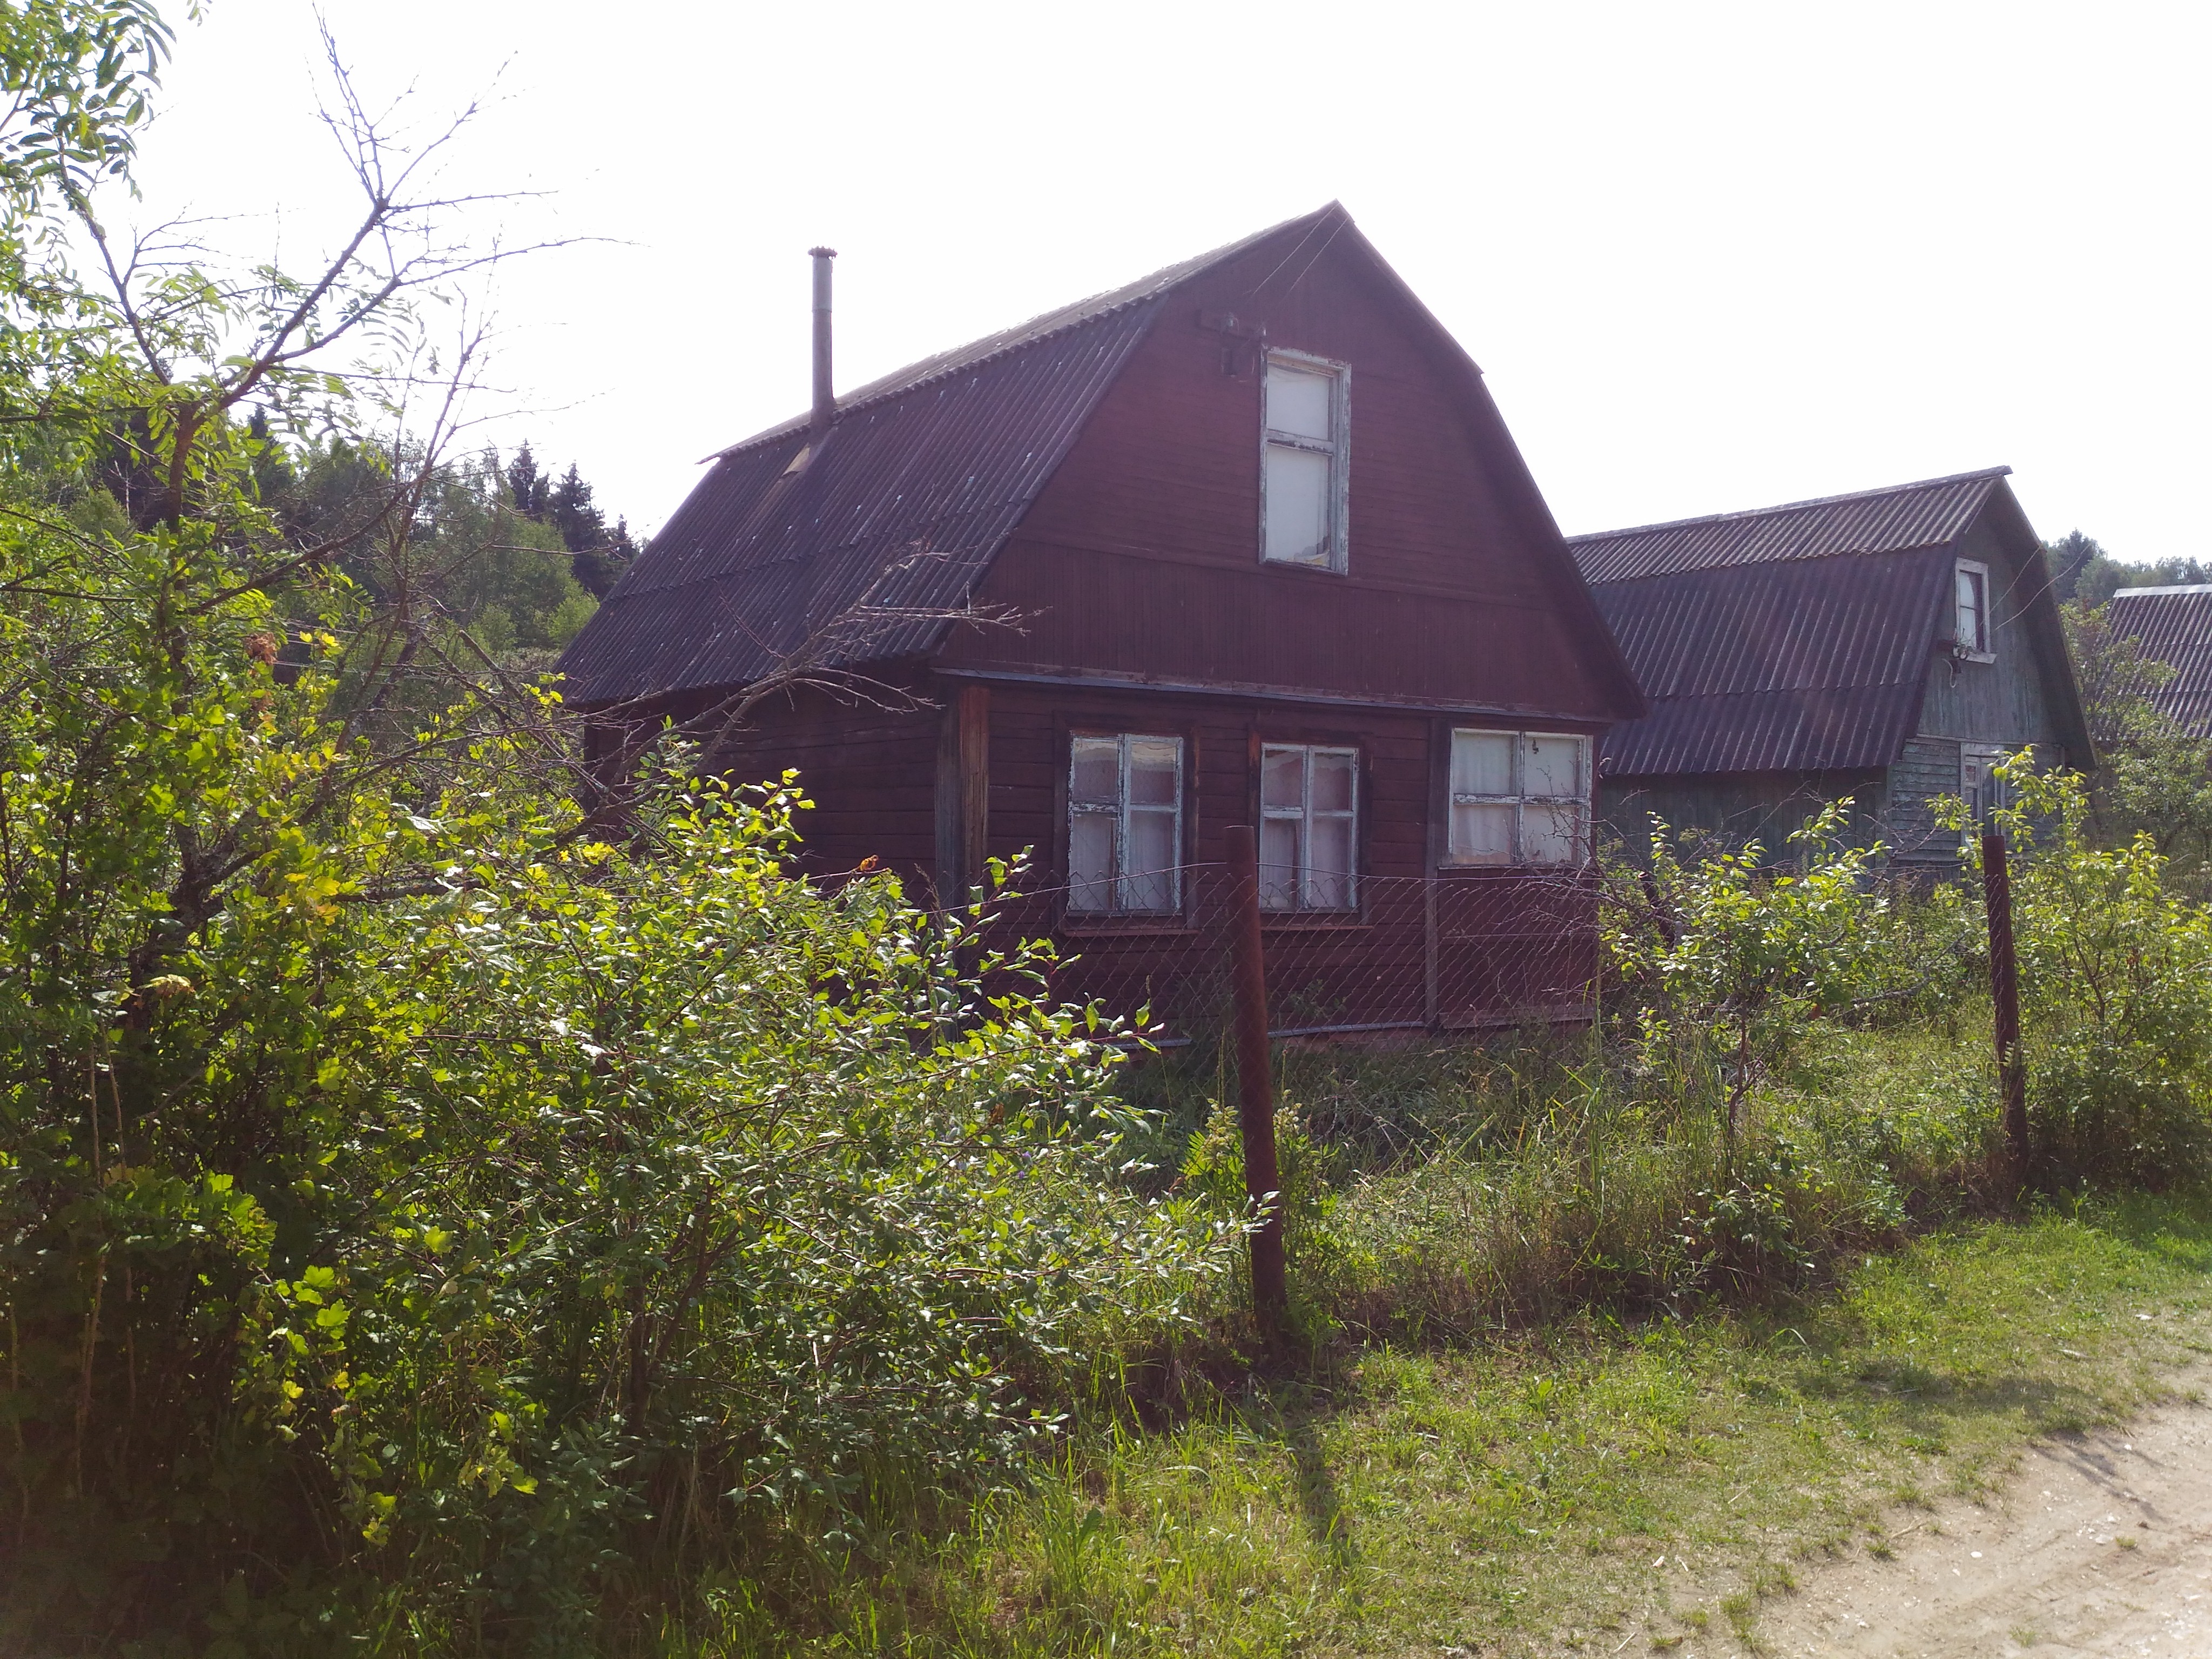 Продажа дачного дома в СНТ Здоровье деревня Жданово / Волоколамский район Московской области.